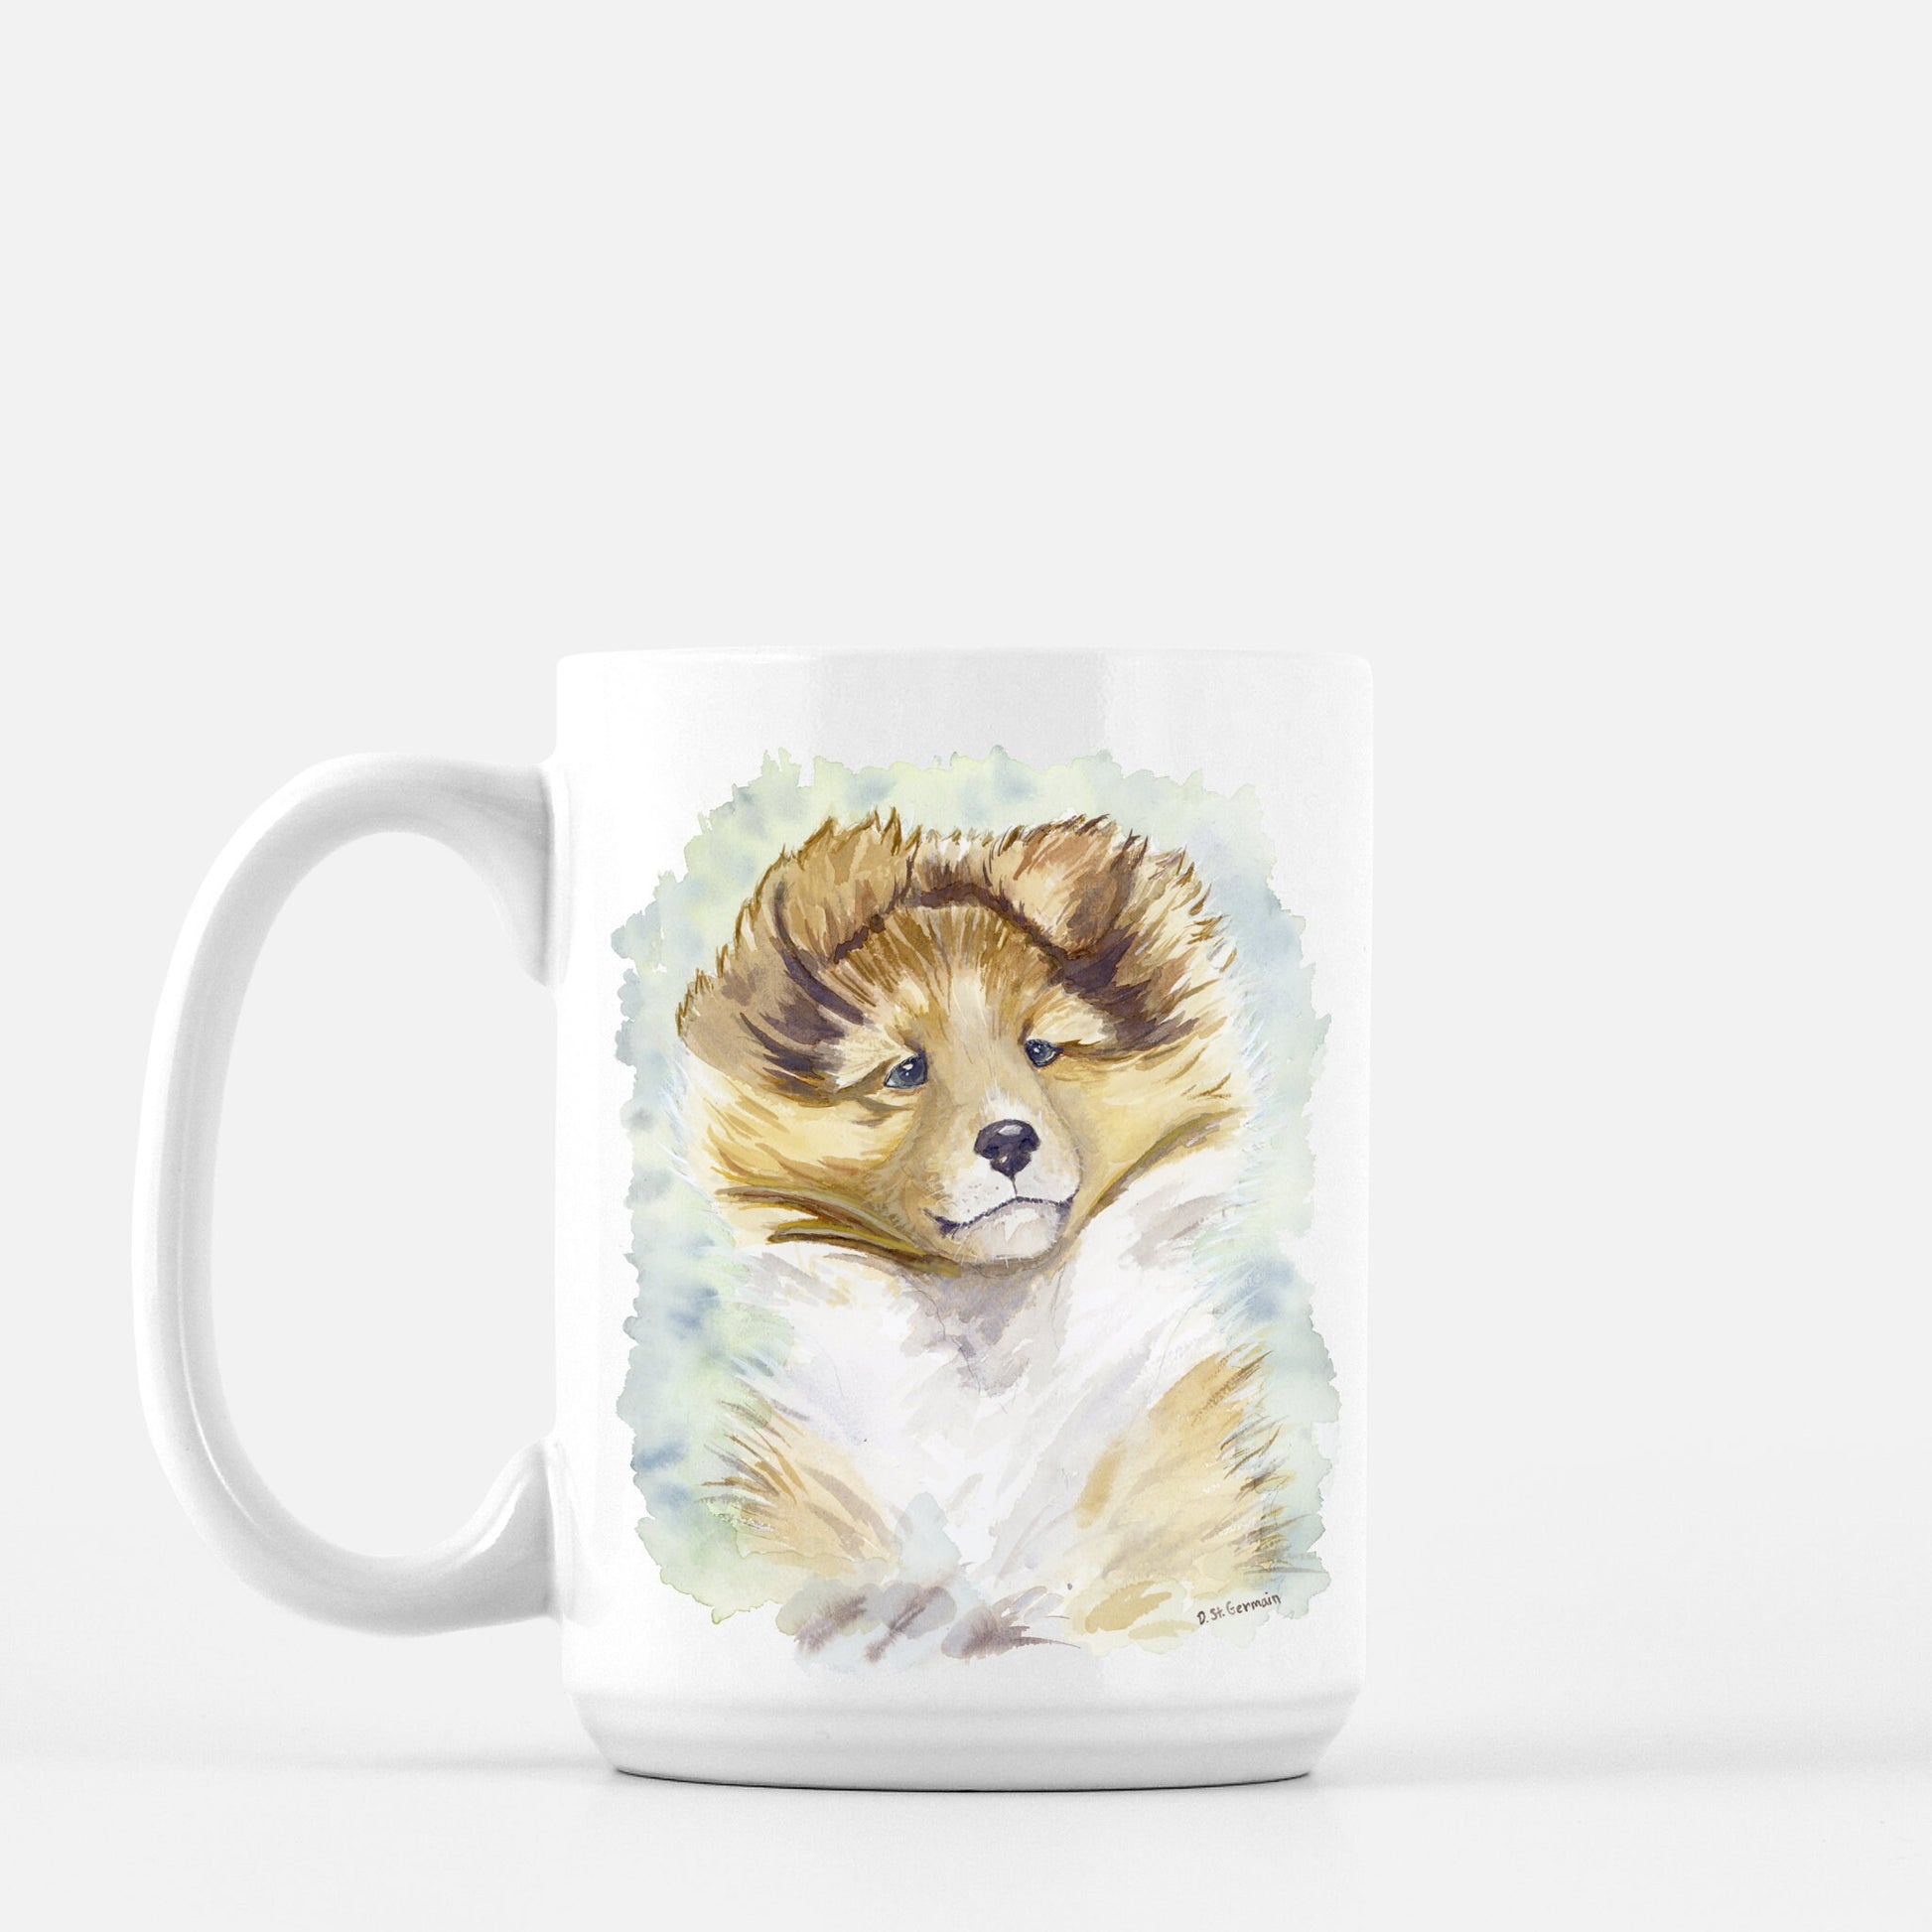 Sheltie Mug, Shetland Sheepdog, Sable Sheltie, Sheltie Mom Gift, Cutomized, Personalized Dog Mug, Sheltie Gift, Dog Lover Gift